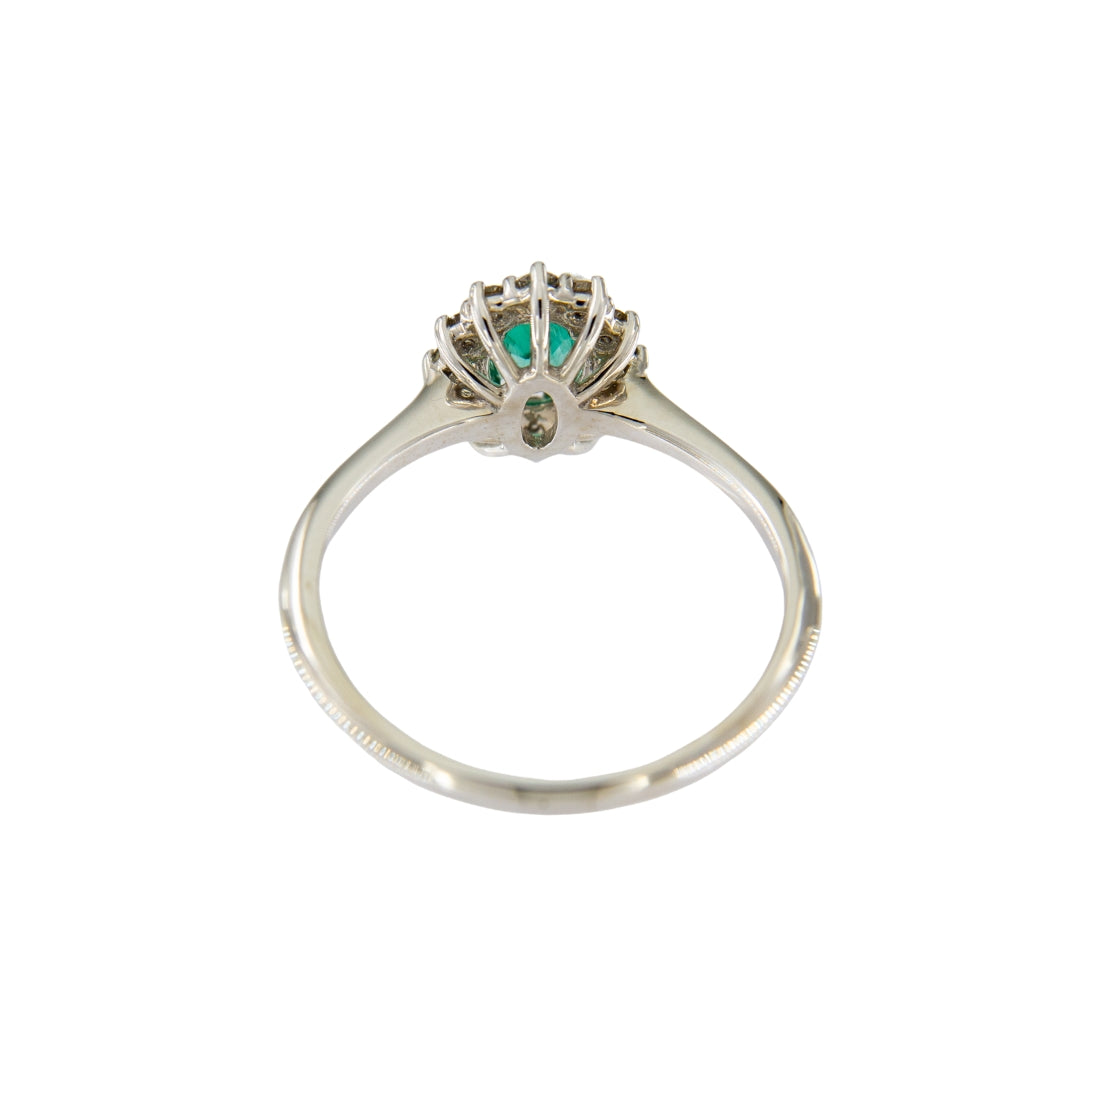 Anello smeraldo naturale ovale ct 0,40 con contorno di diamanti